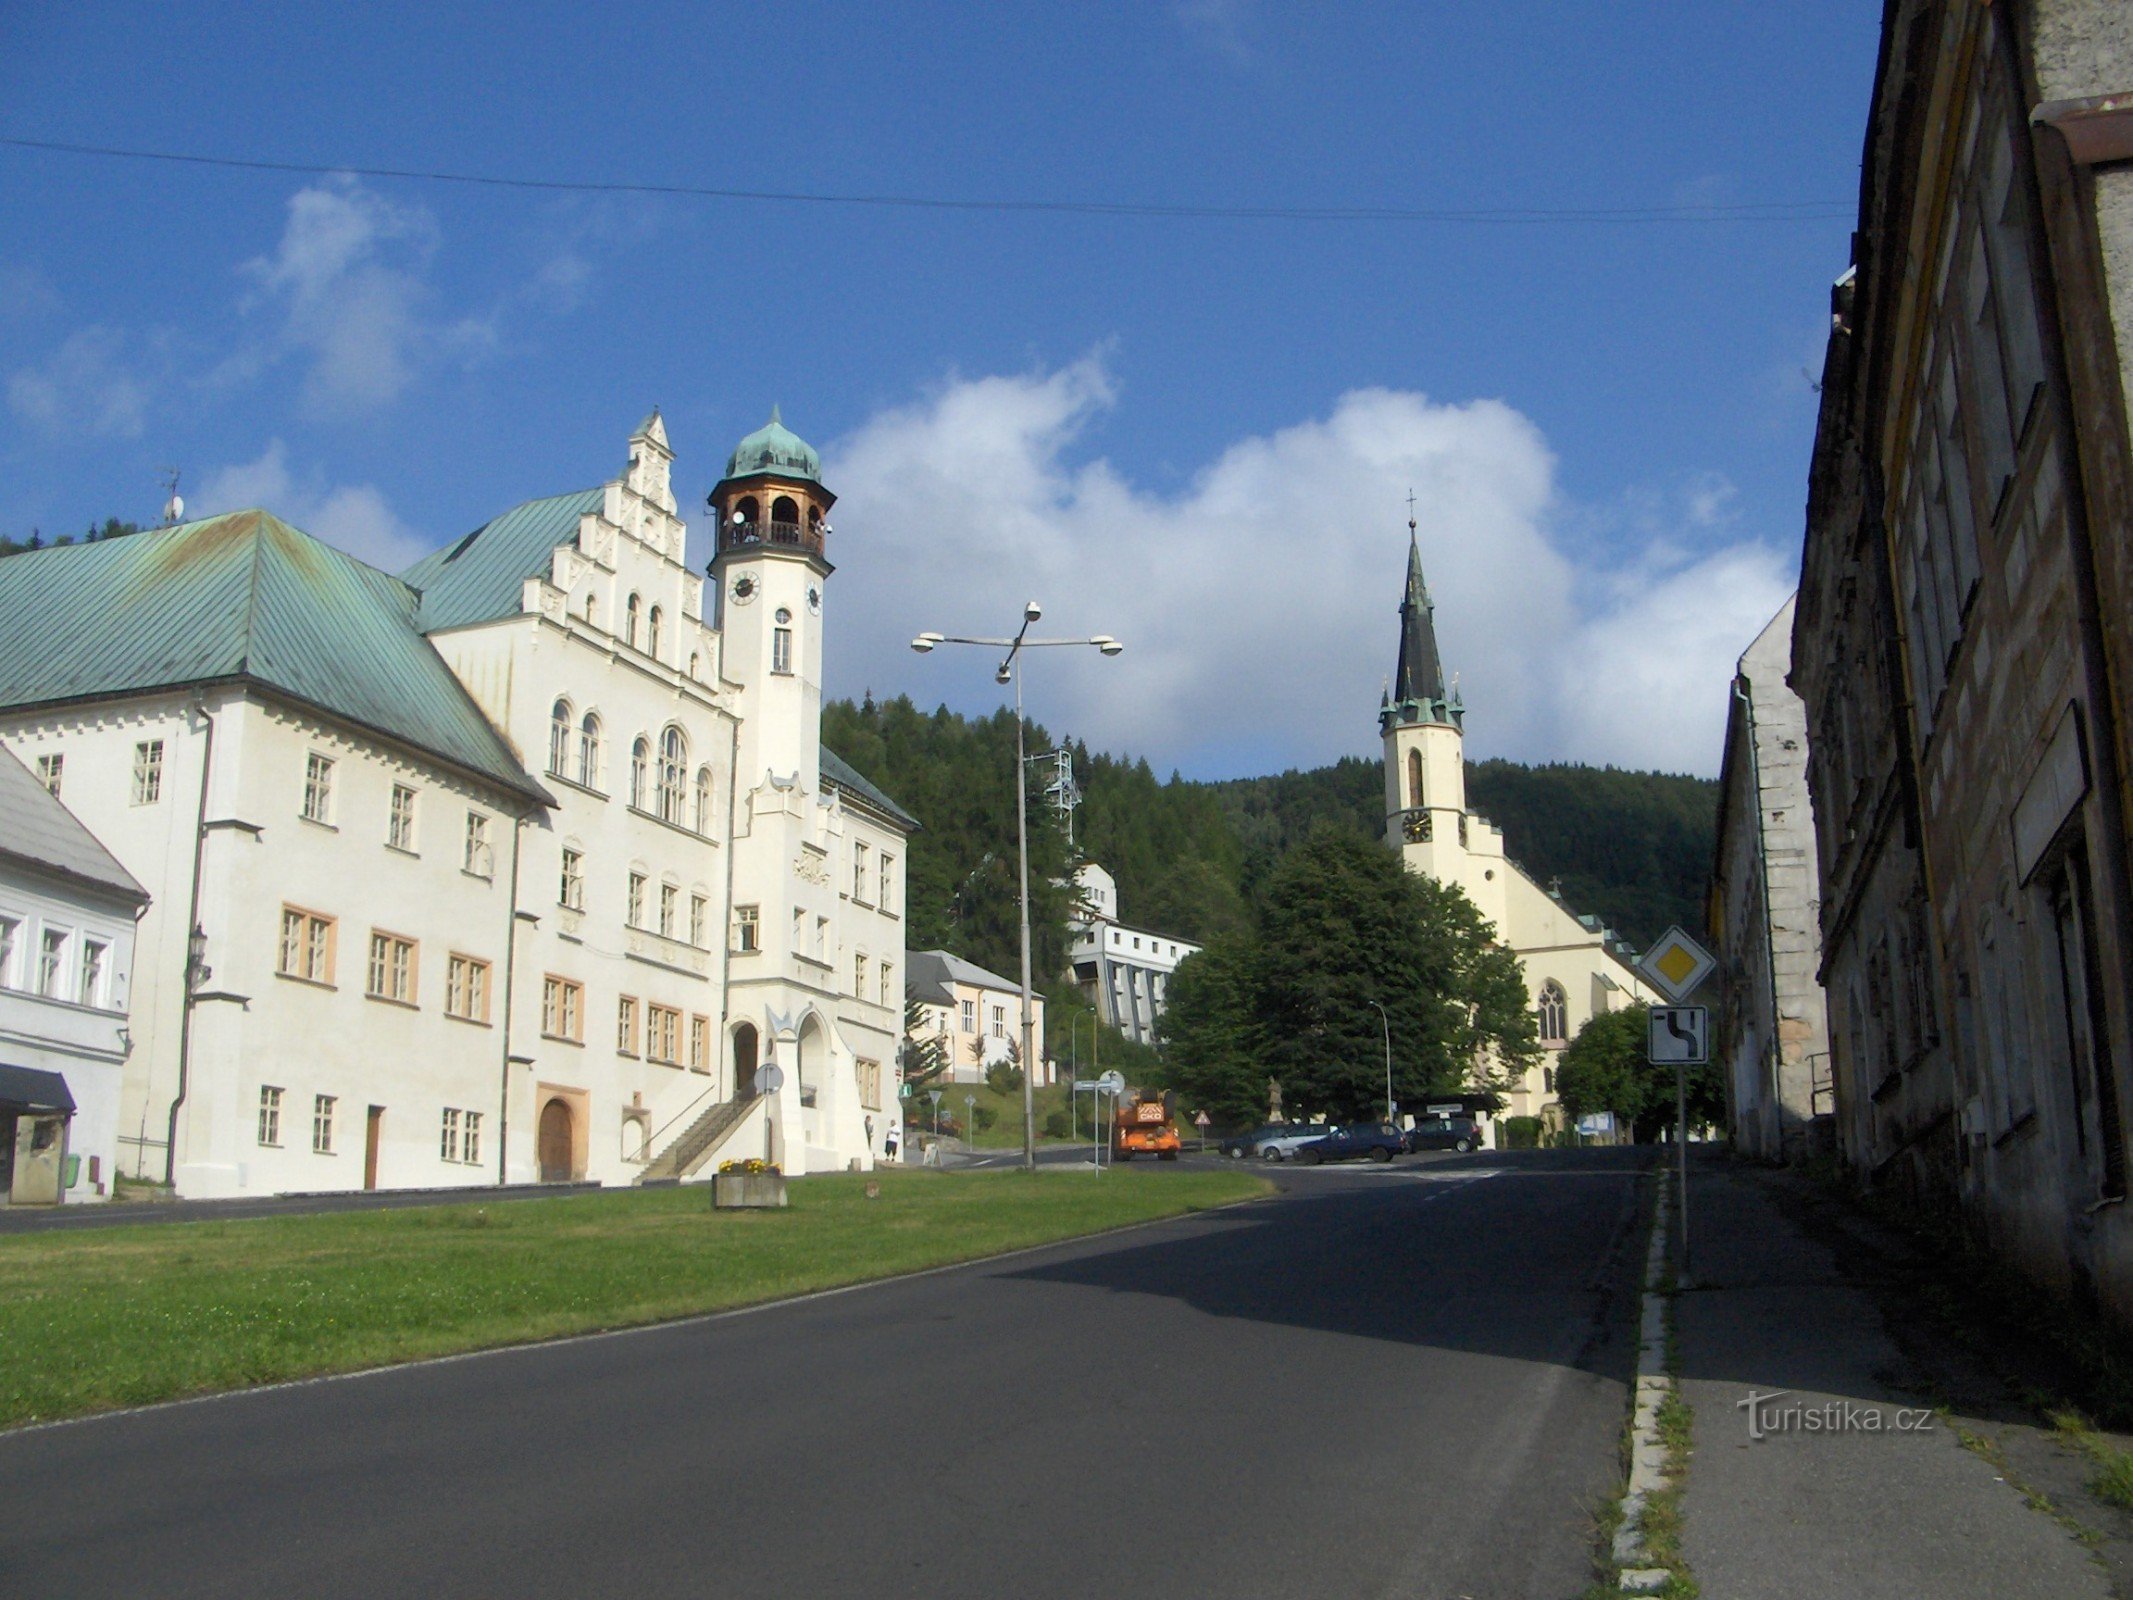 Gradska vijećnica i crkva sv. Jáchym